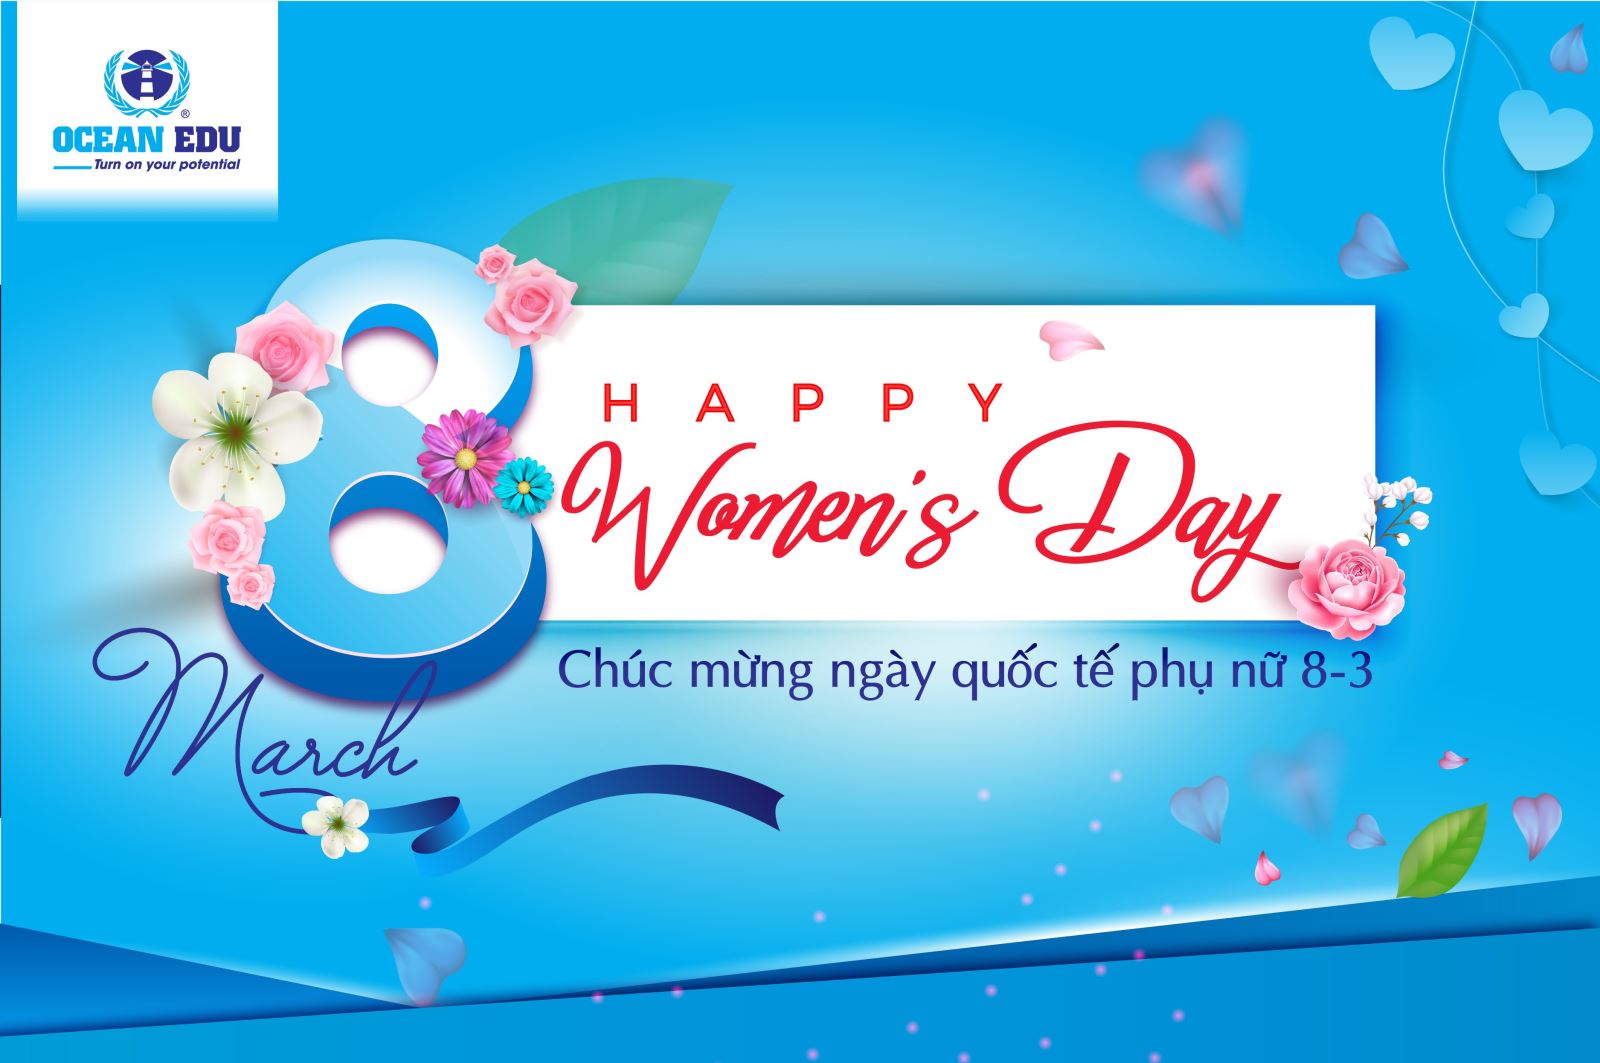 Hãy thể hiện sự quan tâm và tình cảm tới những người phụ nữ quan trọng trong cuộc đời bằng cách tự làm những thiệp chúc mừng ngày Quốc tế Phụ nữ 8/